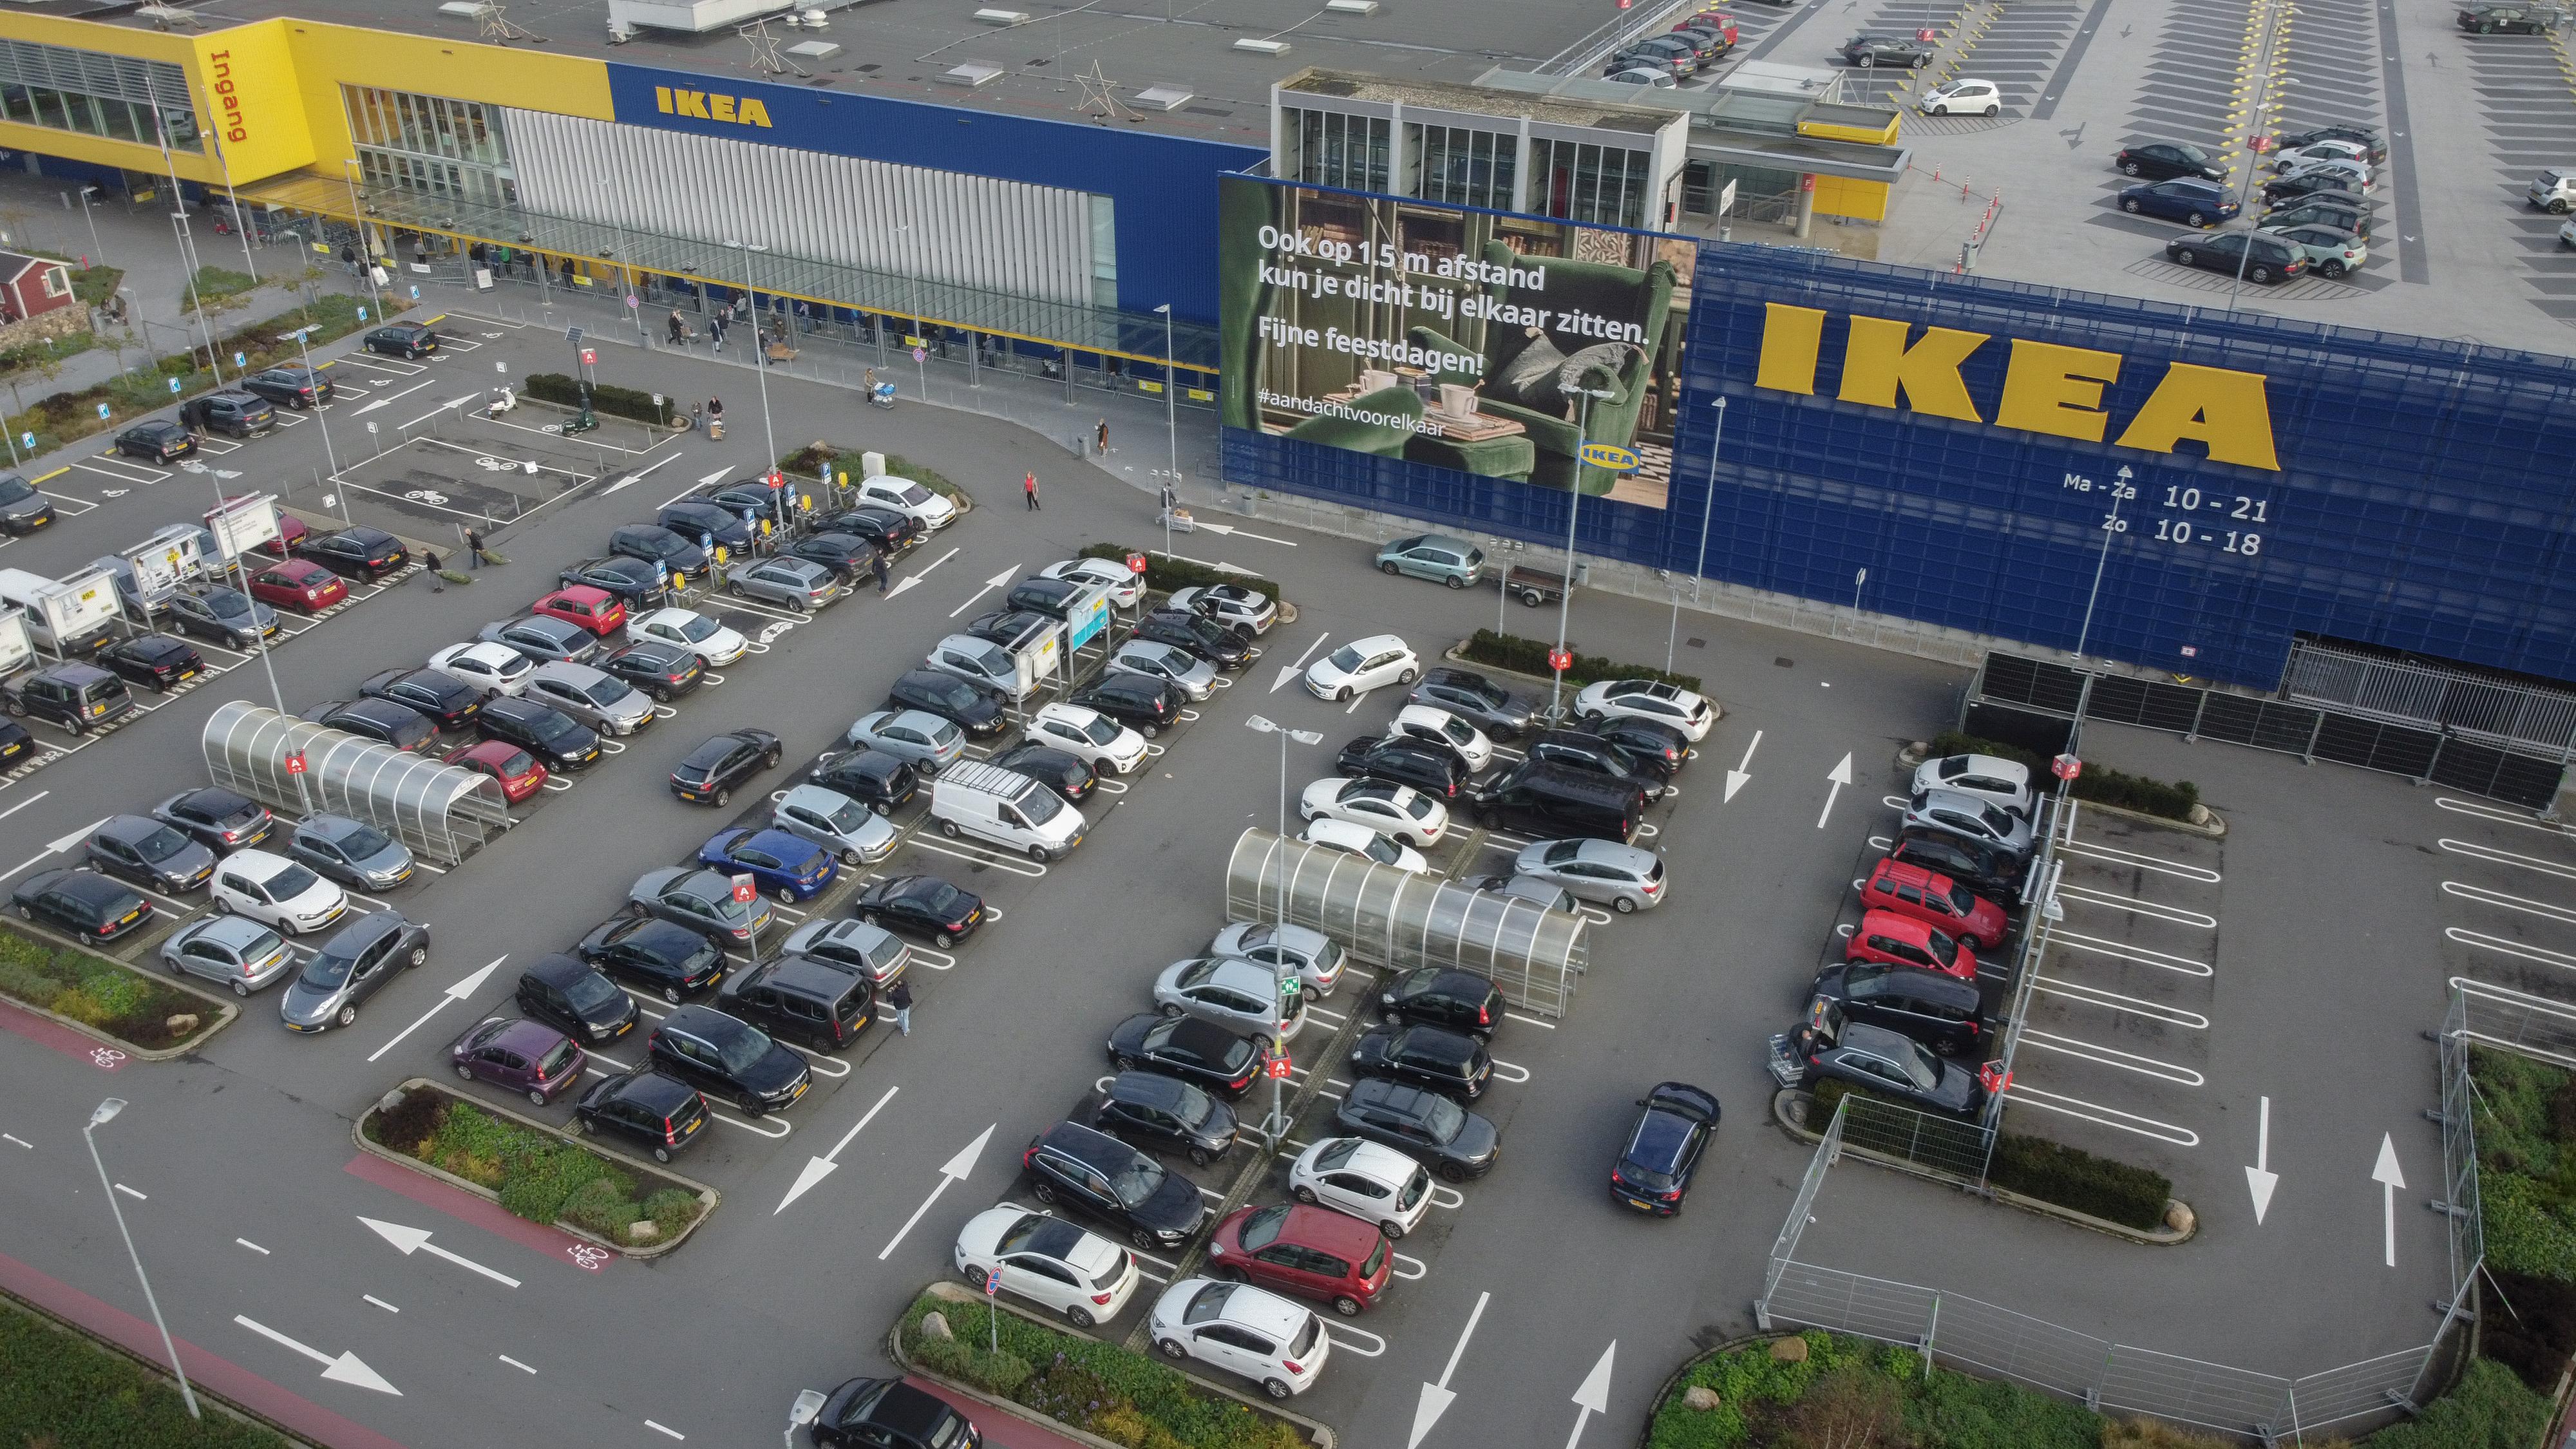 Ikea doet niet mee aan tienminutenshoppen | Telegraaf.nl